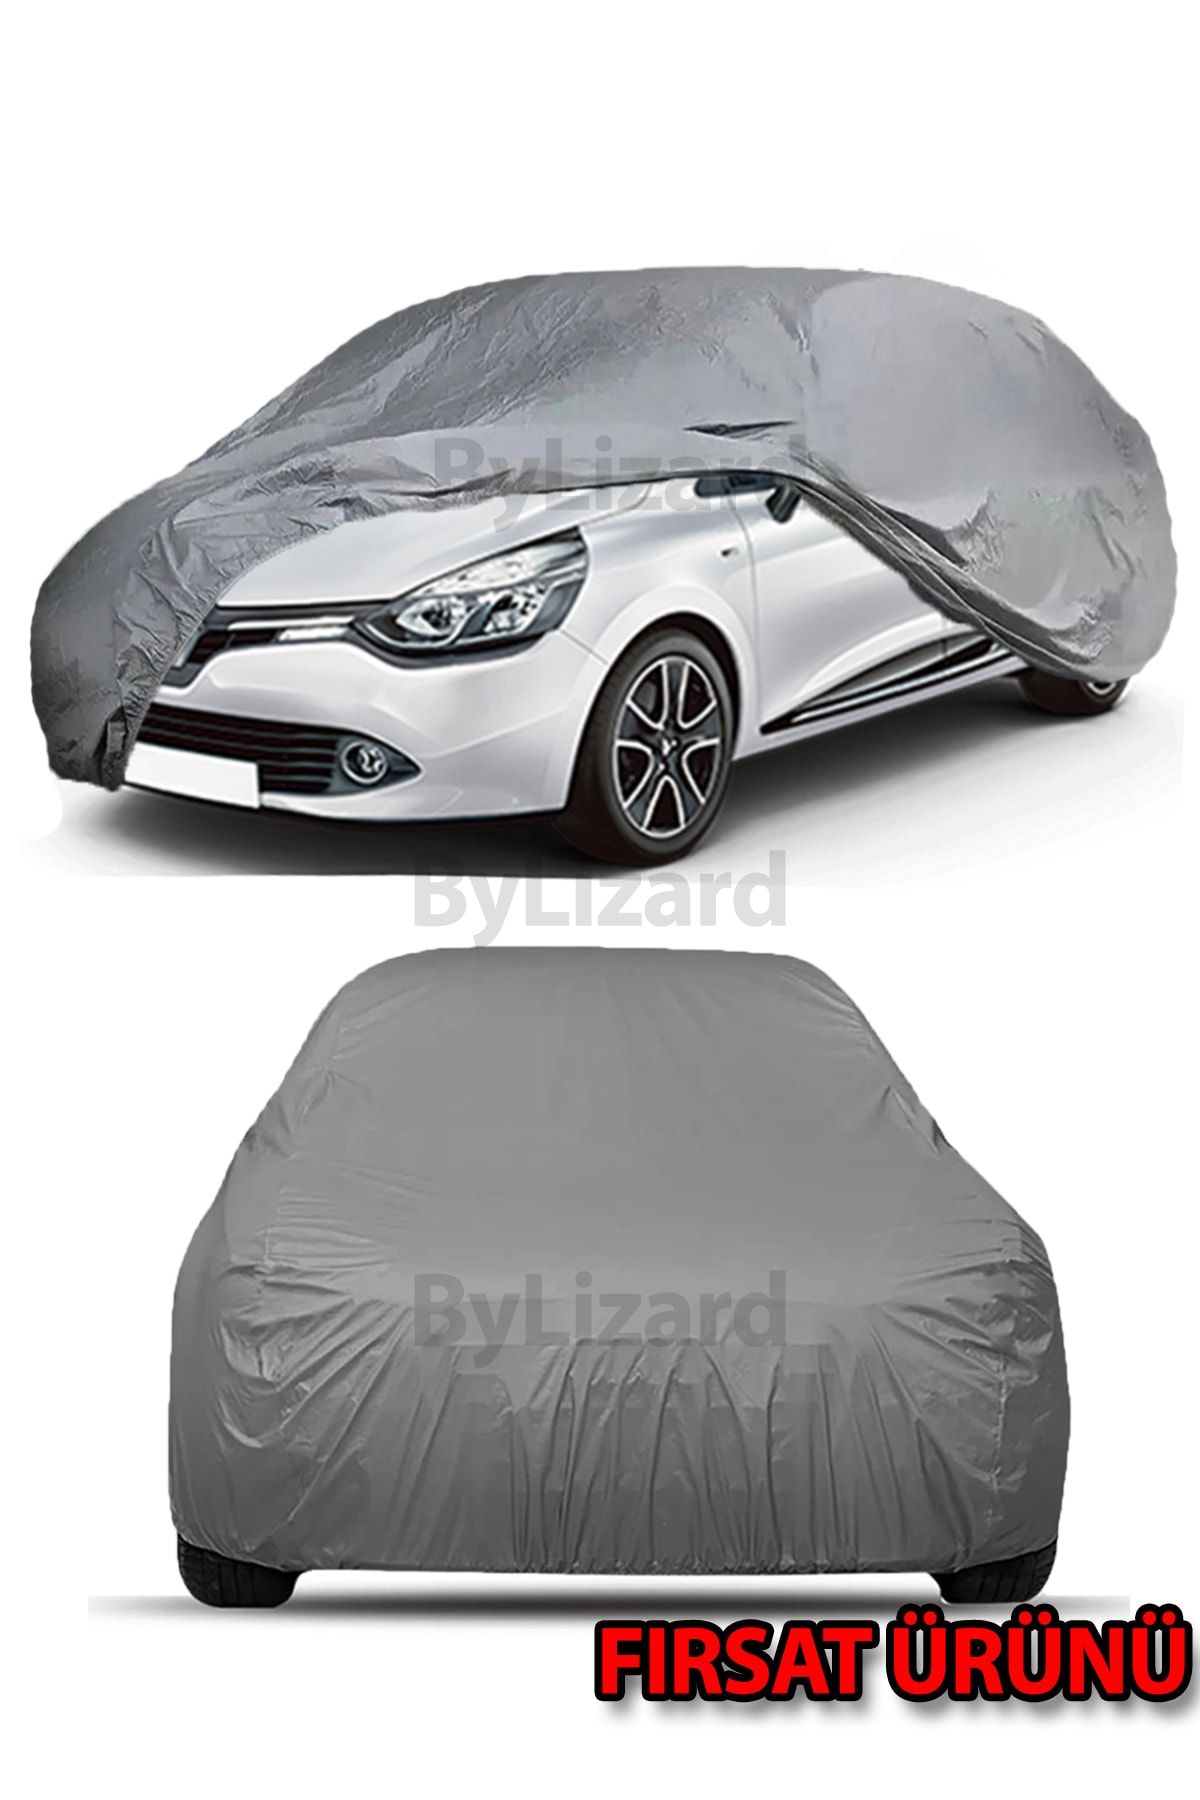 ByLizard Renault Clio Hatchback (hb) Uyumlu Lüks Kalite Oto Araba Brandası  - Örtüsü Fiyatı, Yorumları - Trendyol